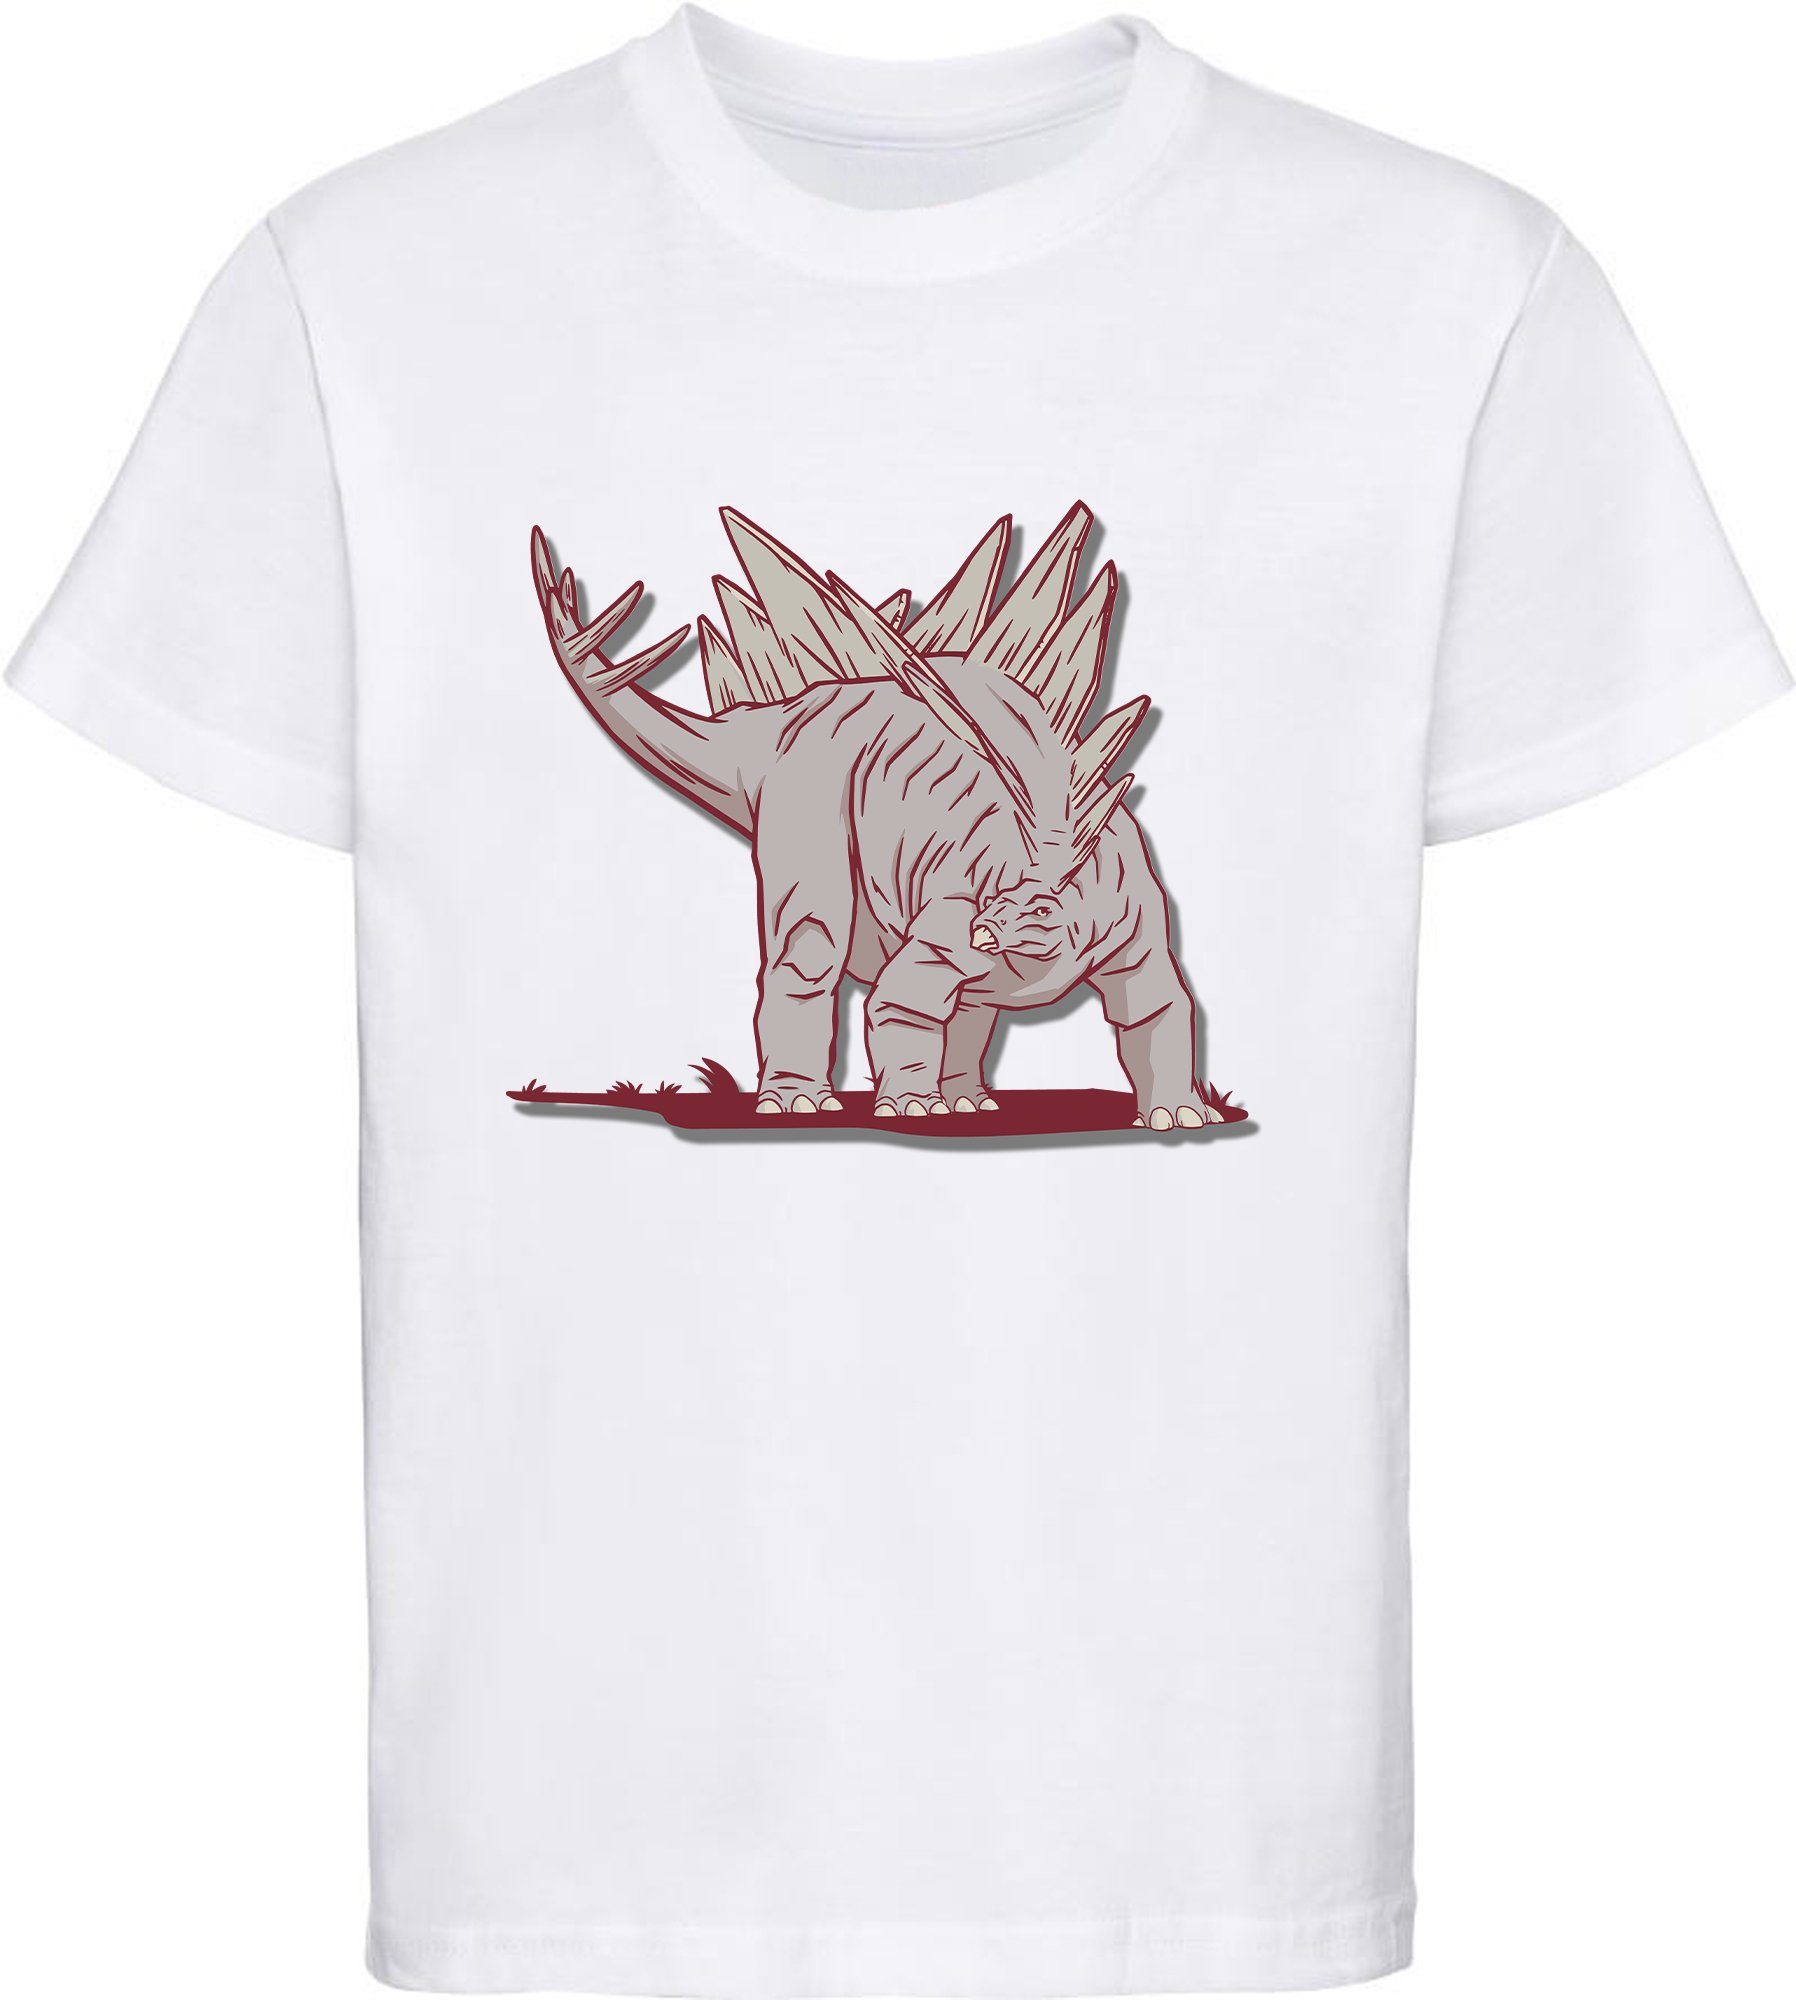 MyDesign24 Print-Shirt bedrucktes Kinder T-Shirt i88 mit Stegosaurus Dino, mit blau, schwarz, weiß, rot, Baumwollshirt weiss